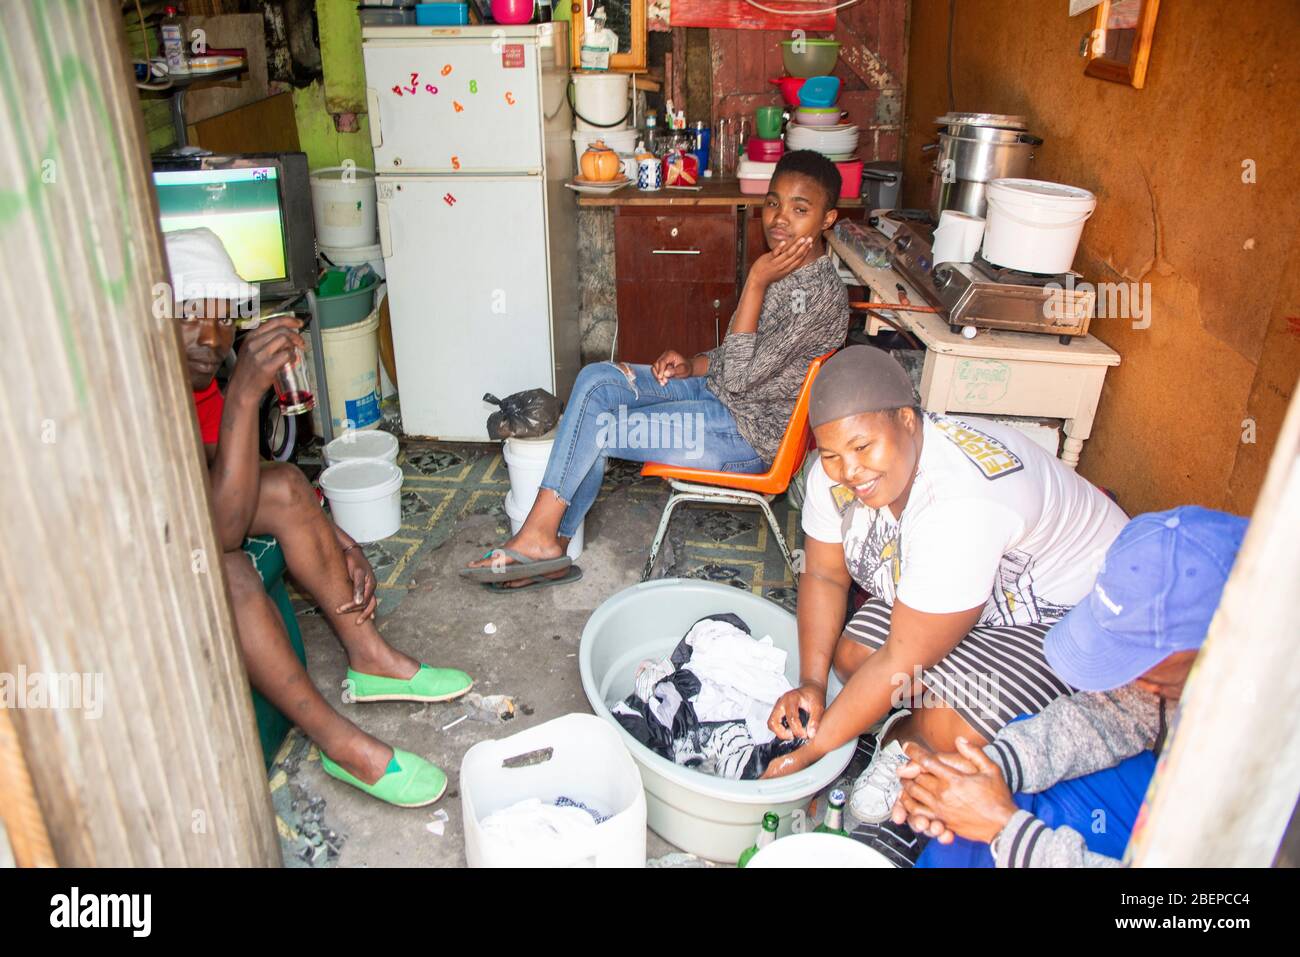 Una famiglia rilassarsi nella loro camera singola casa in una cittadina a Città del Capo. La sistemazione è un sacco con tutto il necessario presente. Le condizioni sono squallidi, ma c'è un'accettazione e i residenti sorridono. Una madre lava il bucato in una ciotola sul pavimento. Foto Stock